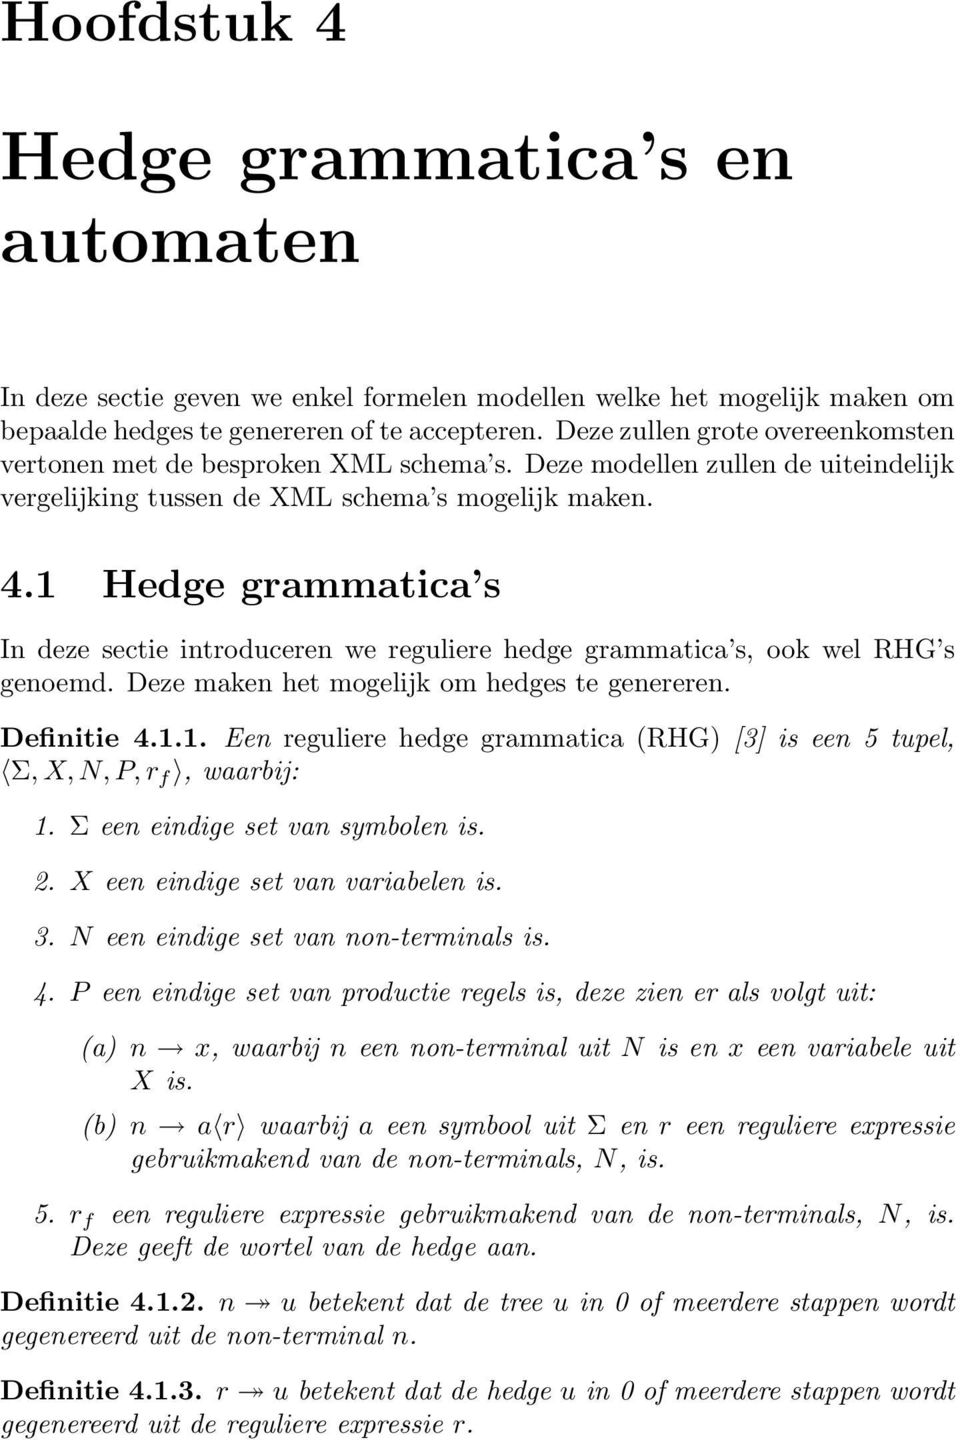 1 Hedge grammatica s In deze sectie introduceren we reguliere hedge grammatica s, ook wel RHG s genoemd. Deze maken het mogelijk om hedges te genereren. Definitie 4.1.1. Een reguliere hedge grammatica (RHG) [3] is een 5 tupel, Σ, X, N, P, r f, waarbij: 1.